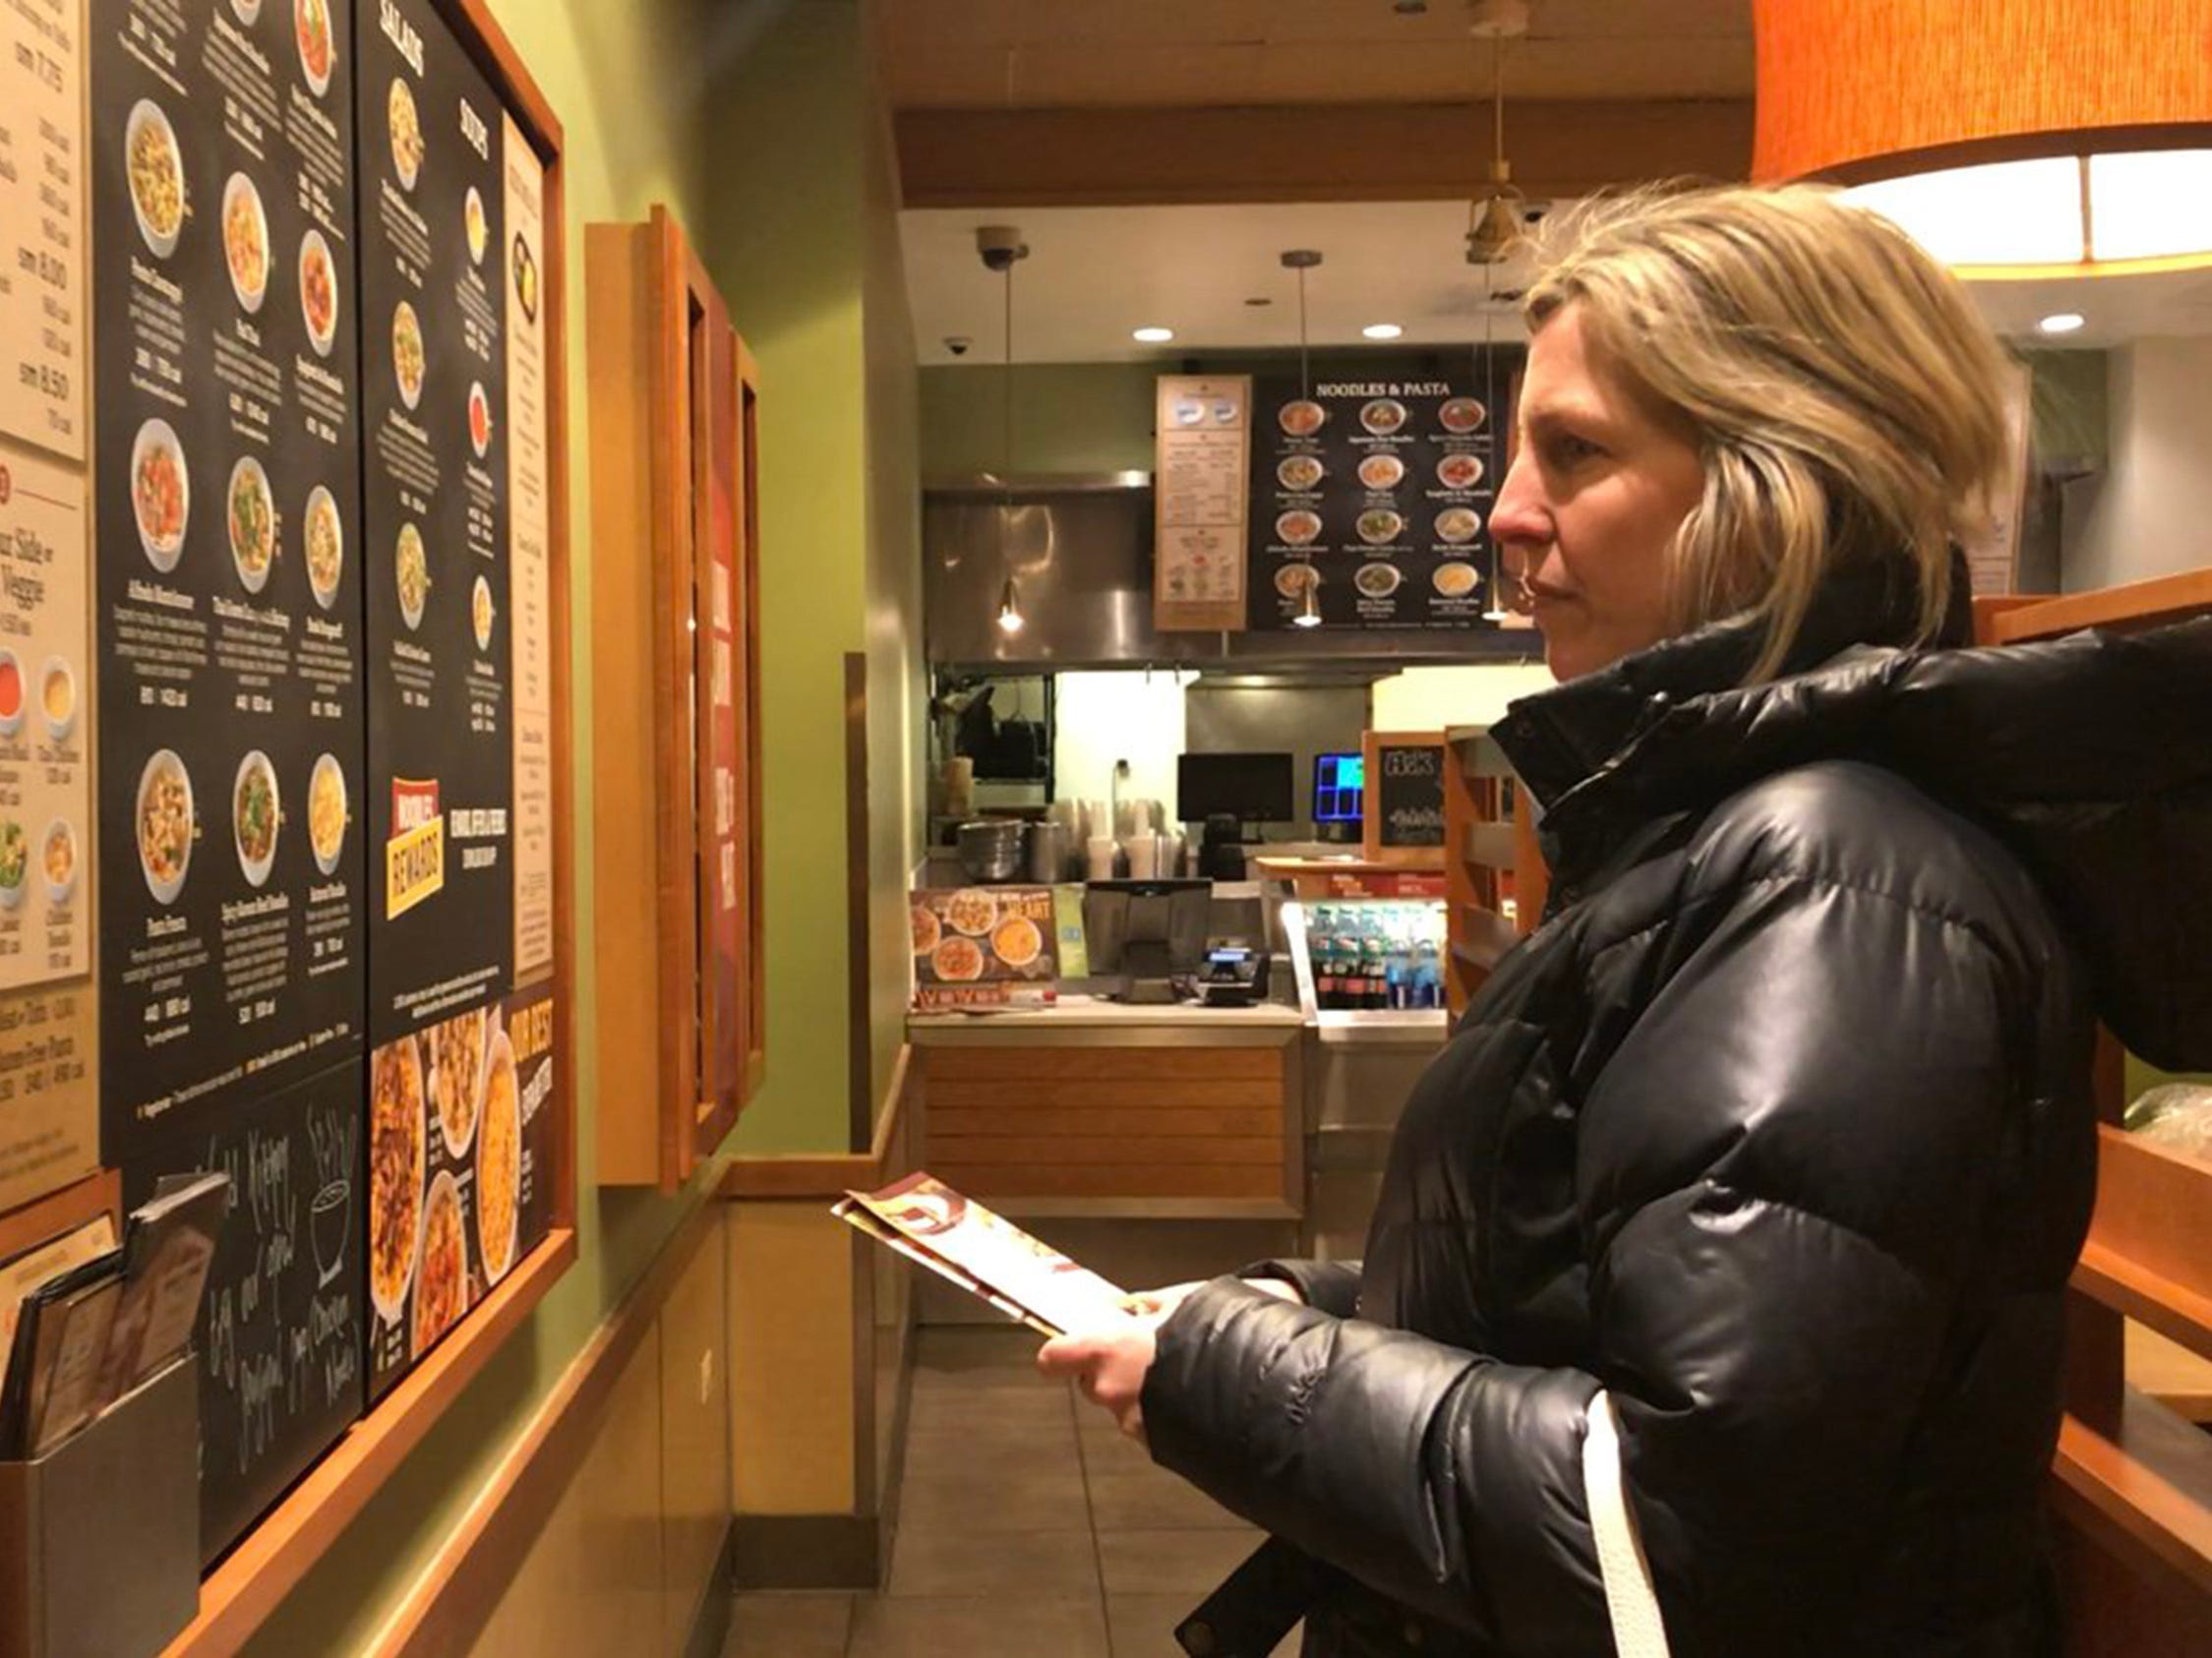 Woman looks at panda express menu